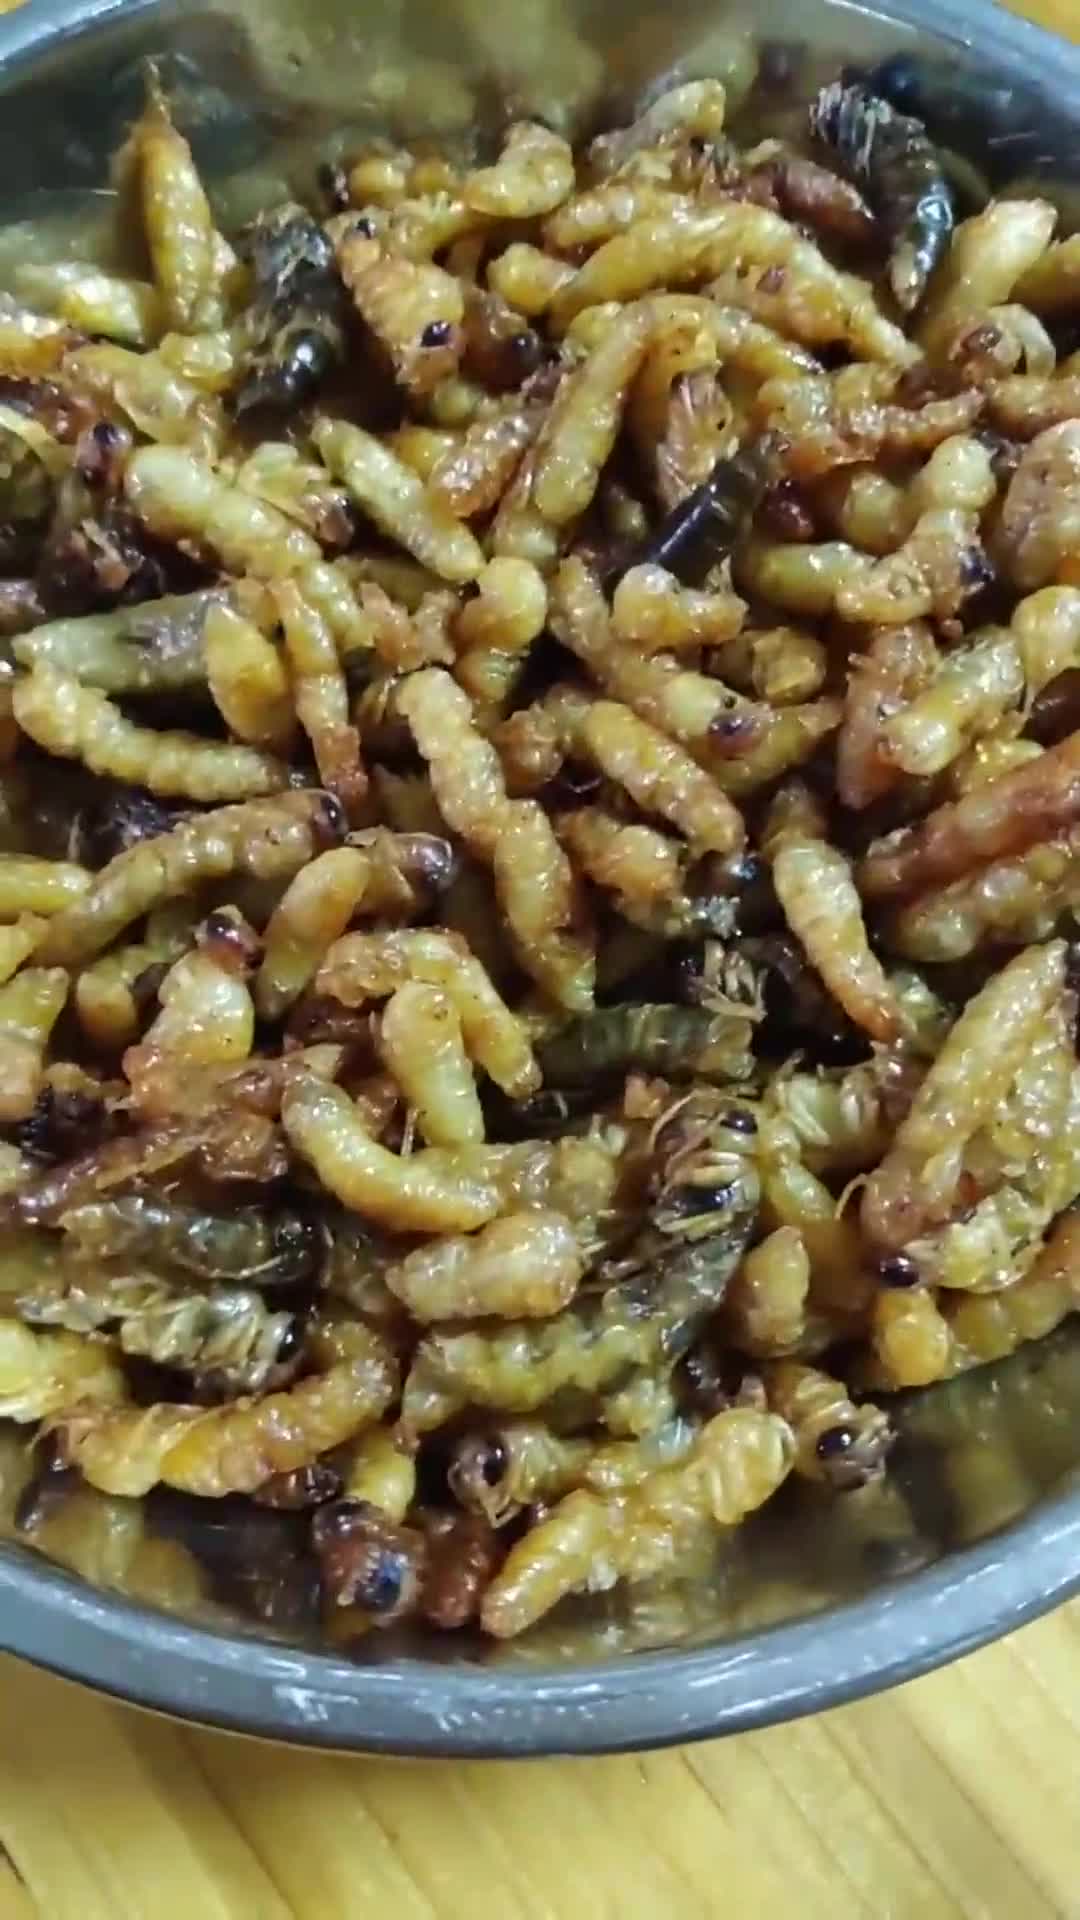 养蜂人眼中的美味炸蜂蛹,你们吃过炸蜂蛹吗,好不好吃啊